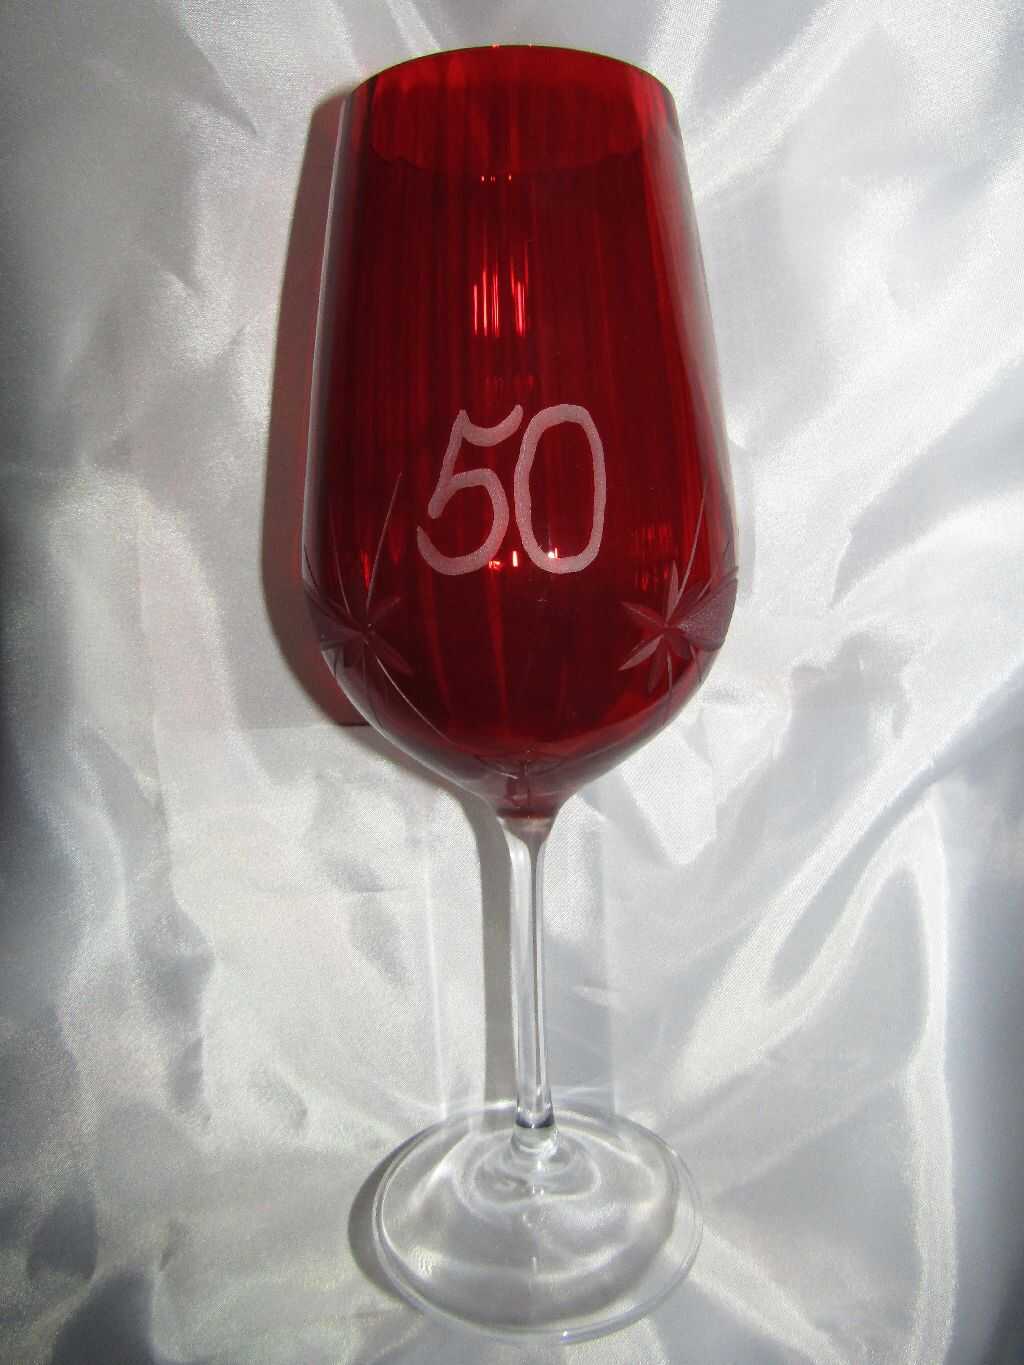 LsG-Crystal Jubilejní červená číše výroční sklenička broušená Kanta J-329 600 ml 1 Ks.